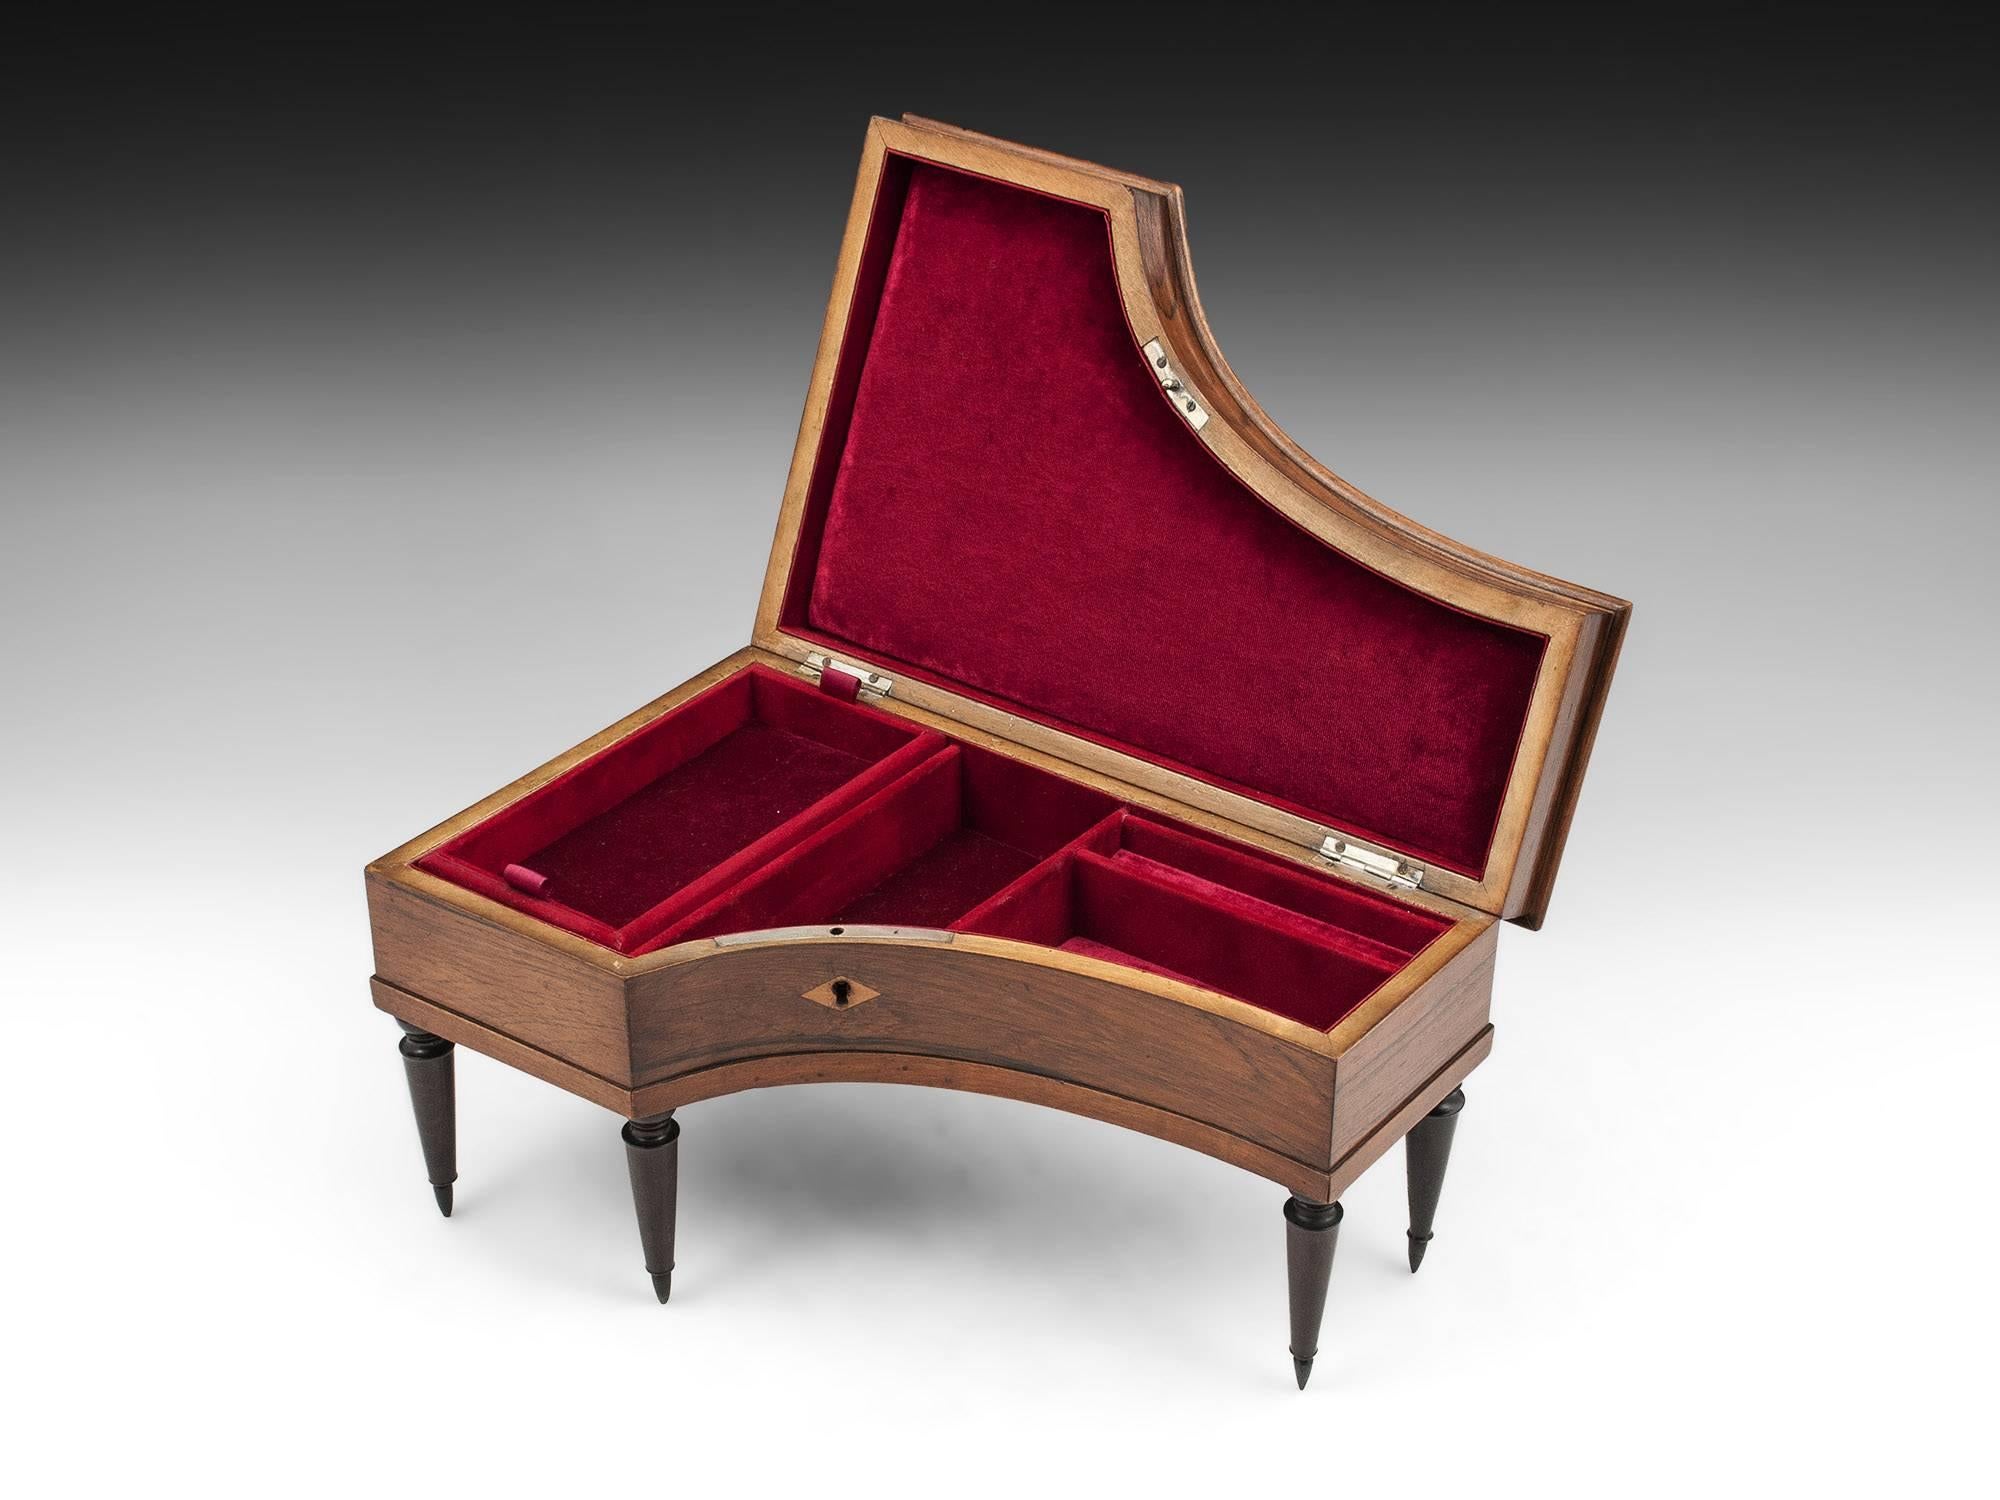 19th Century Miniature Antique Grand Piano Jewelry Box, circa 1830